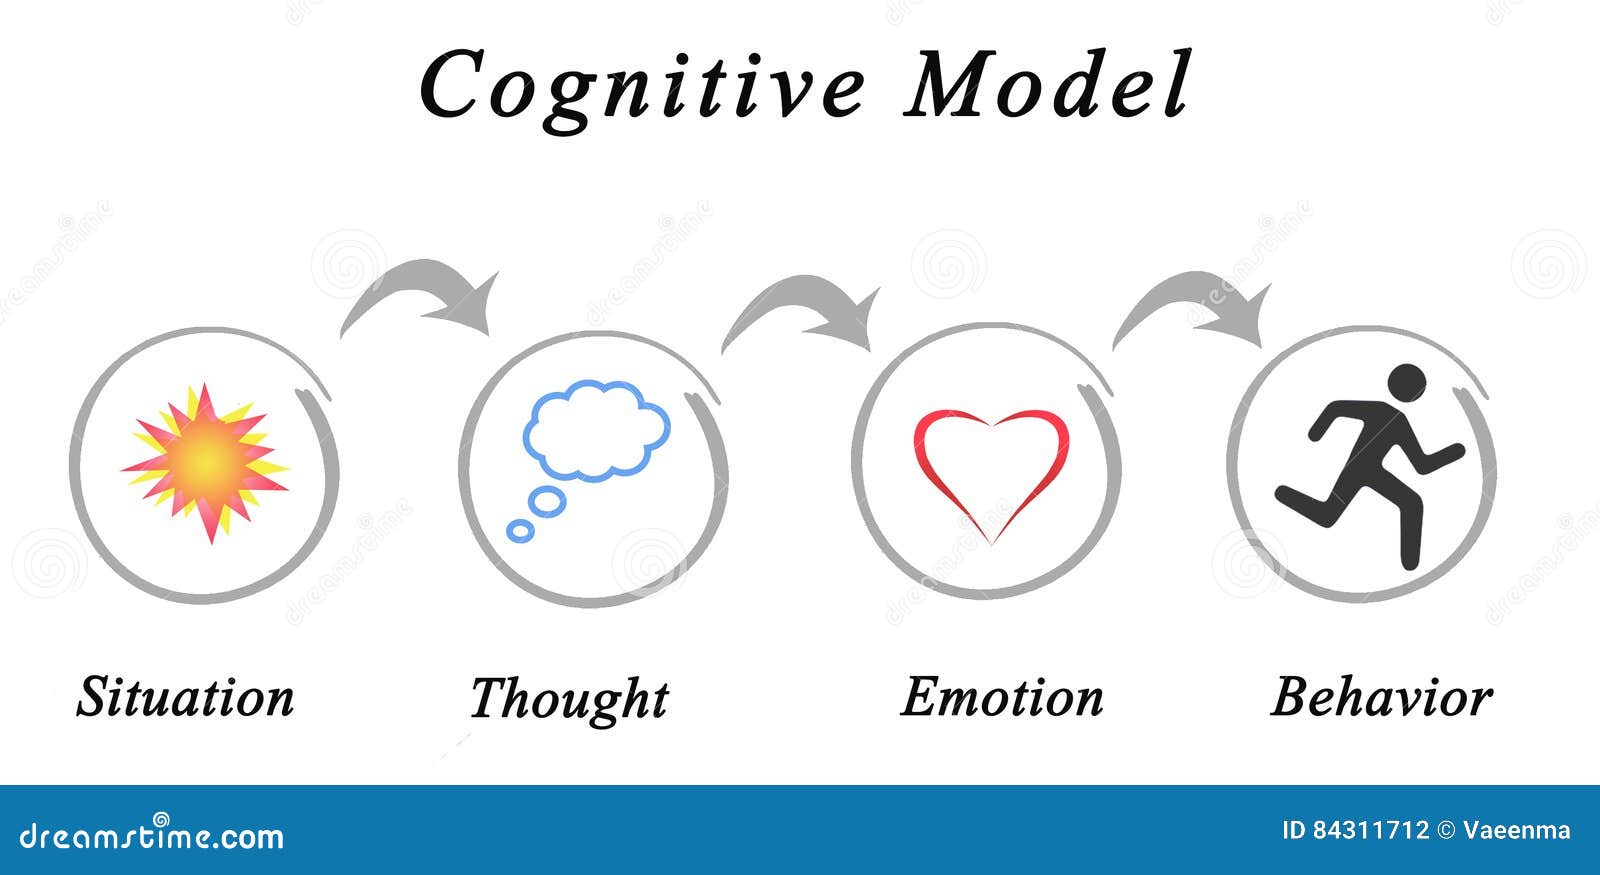 cognitive model